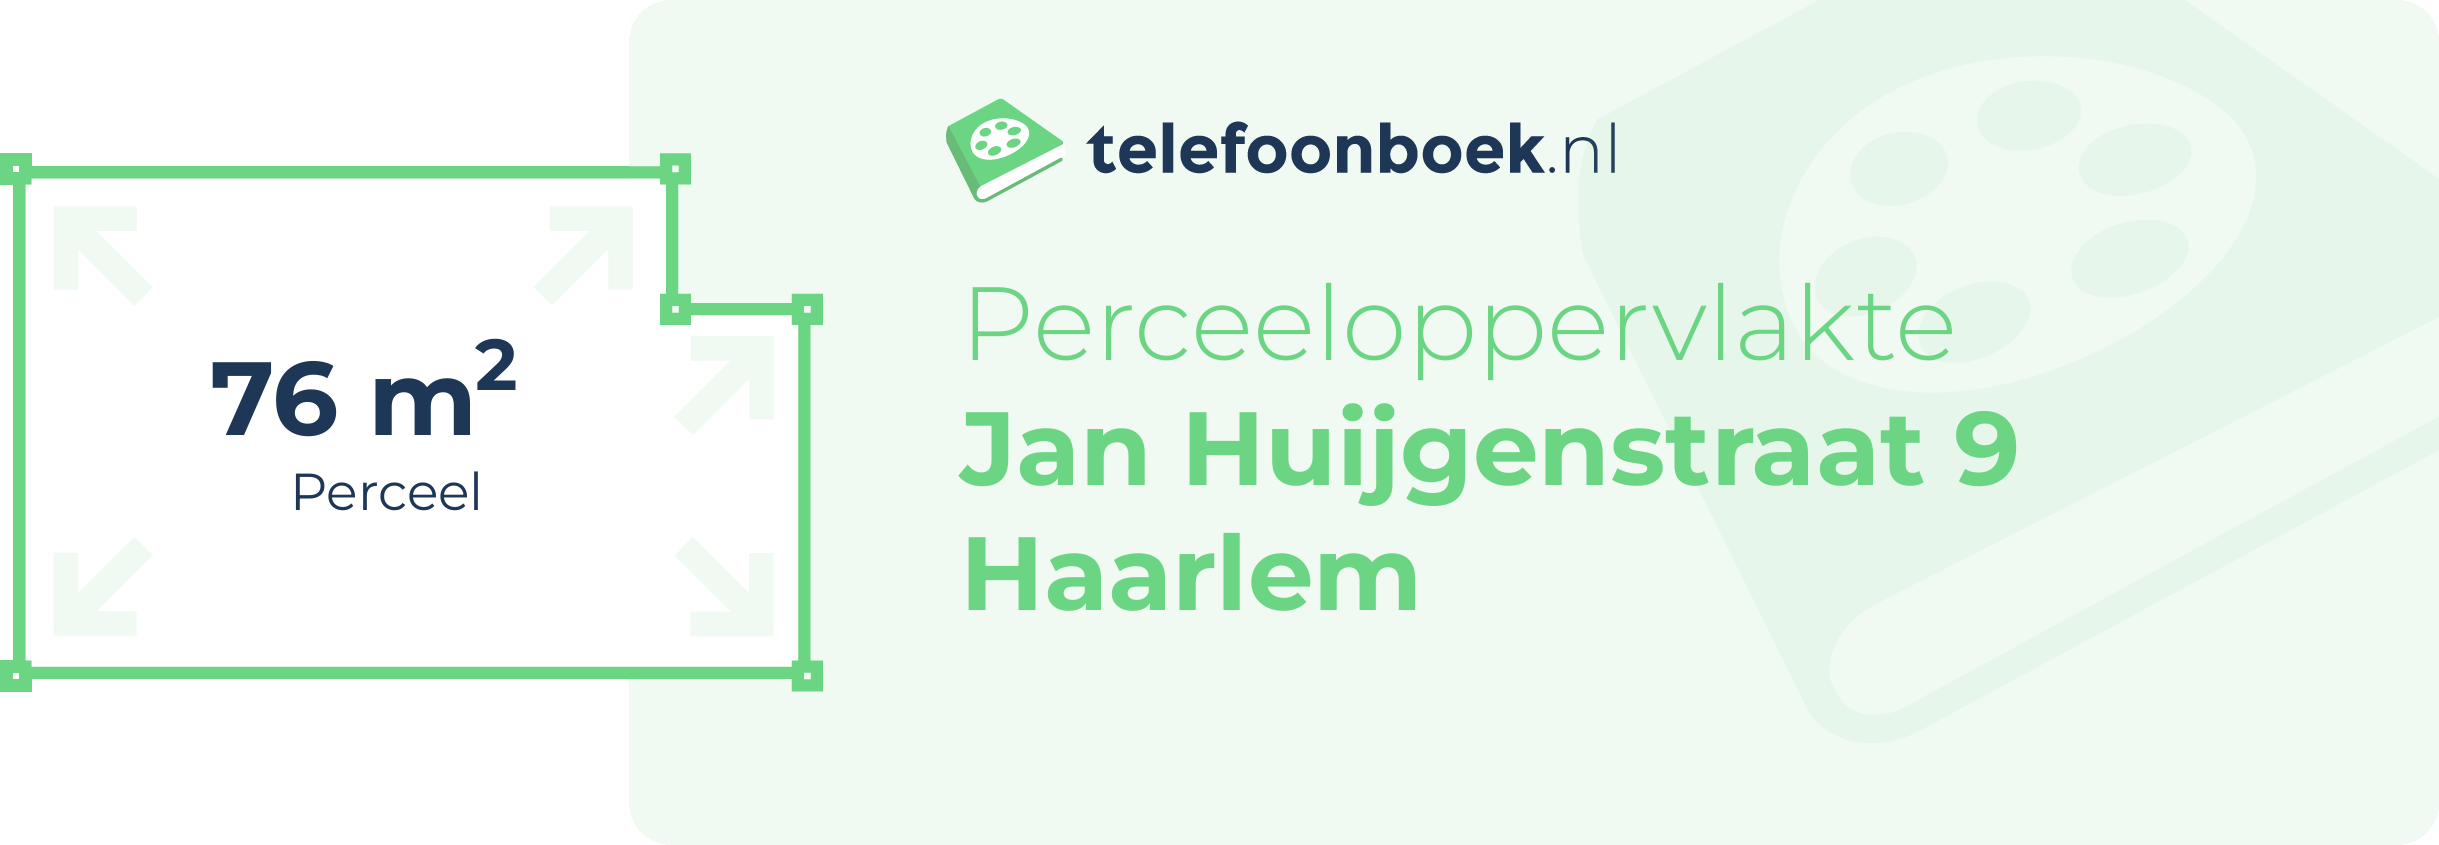 Perceeloppervlakte Jan Huijgenstraat 9 Haarlem